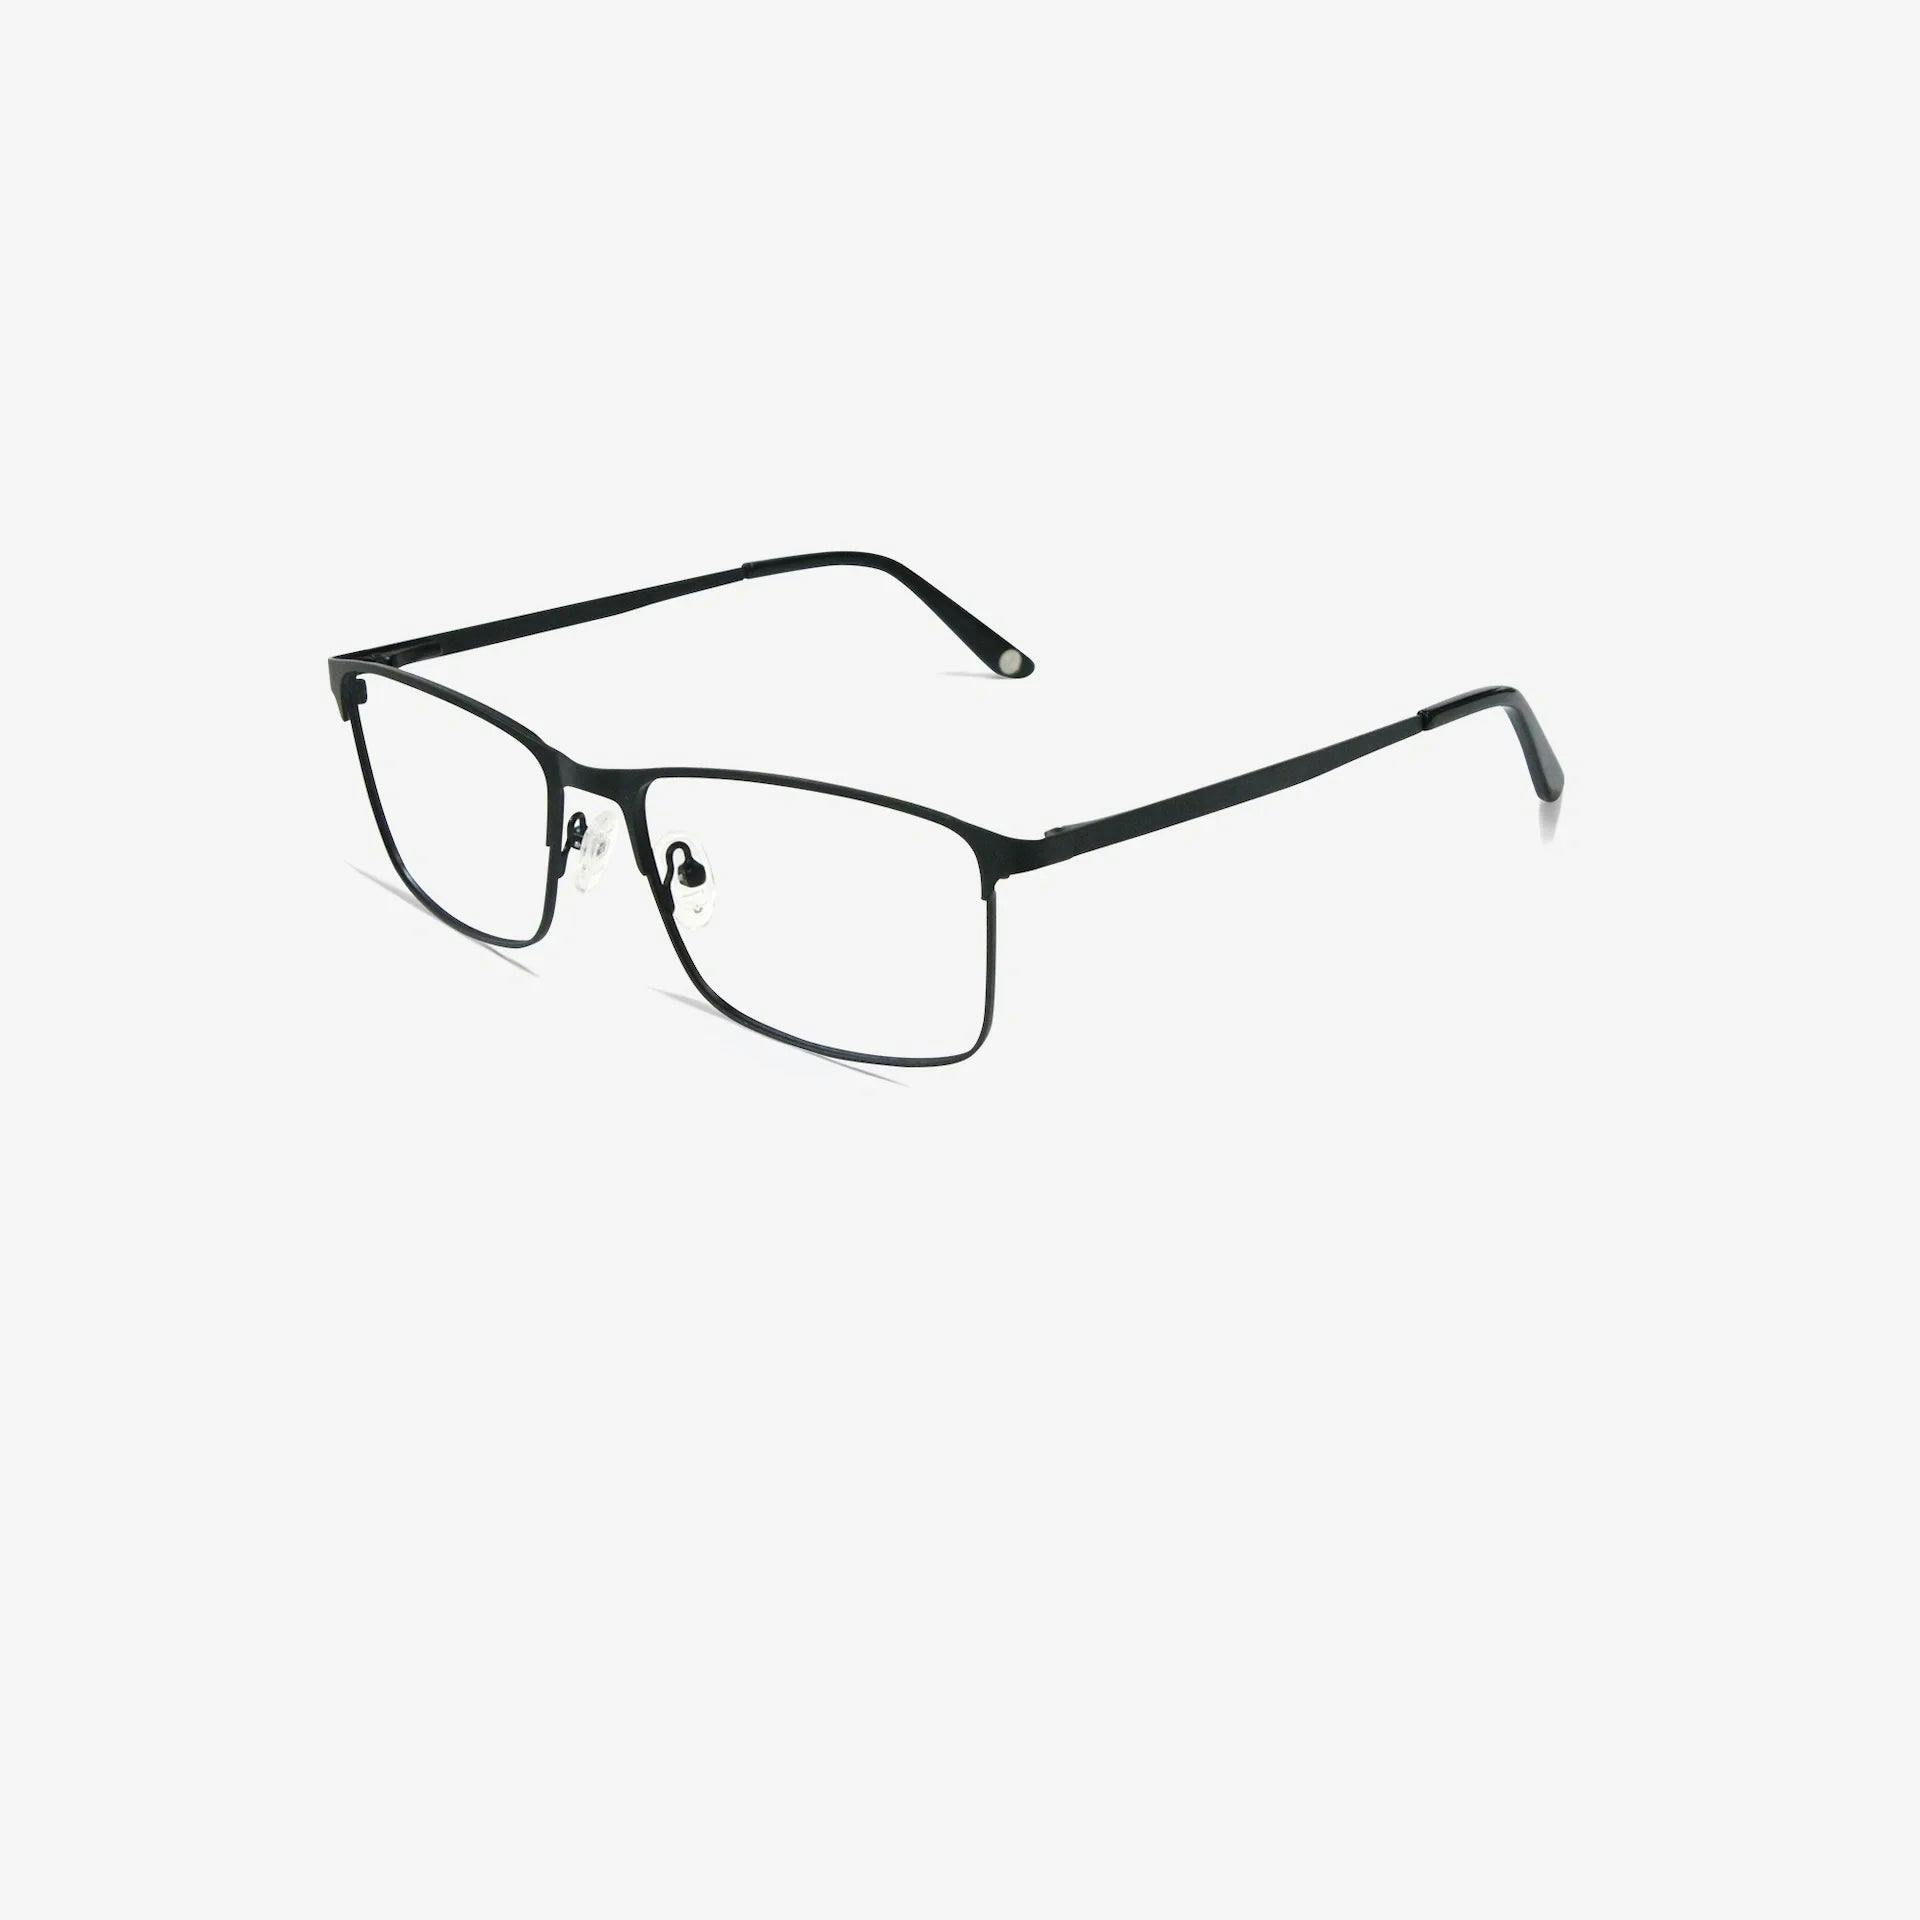 Huxley glasses | Superior Black 